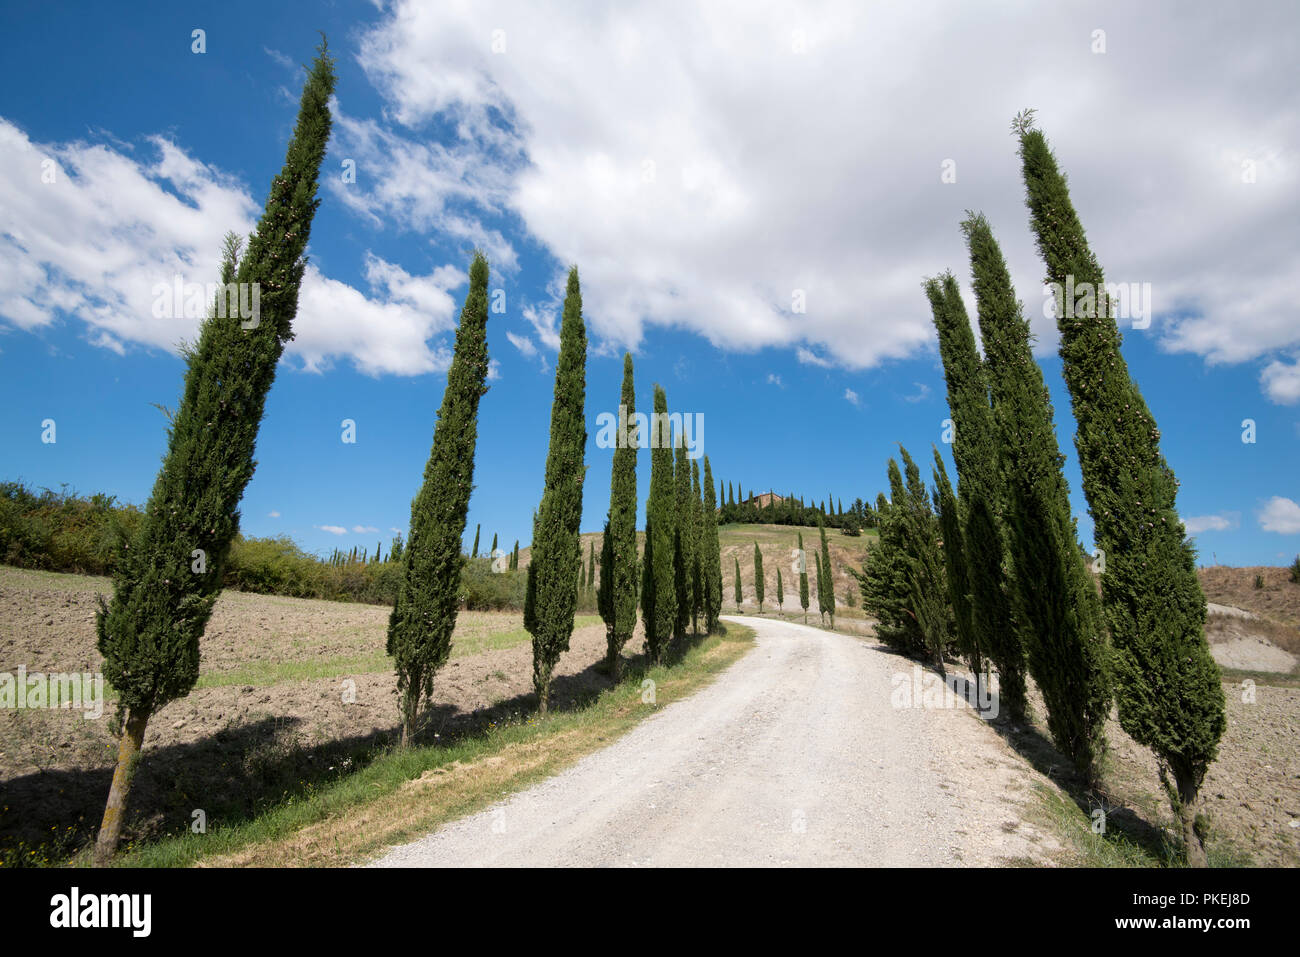 Un cyprès allée bordée d'arbres sur une propriété à Val d'Orcia, Toscane Italie Europe EU Banque D'Images